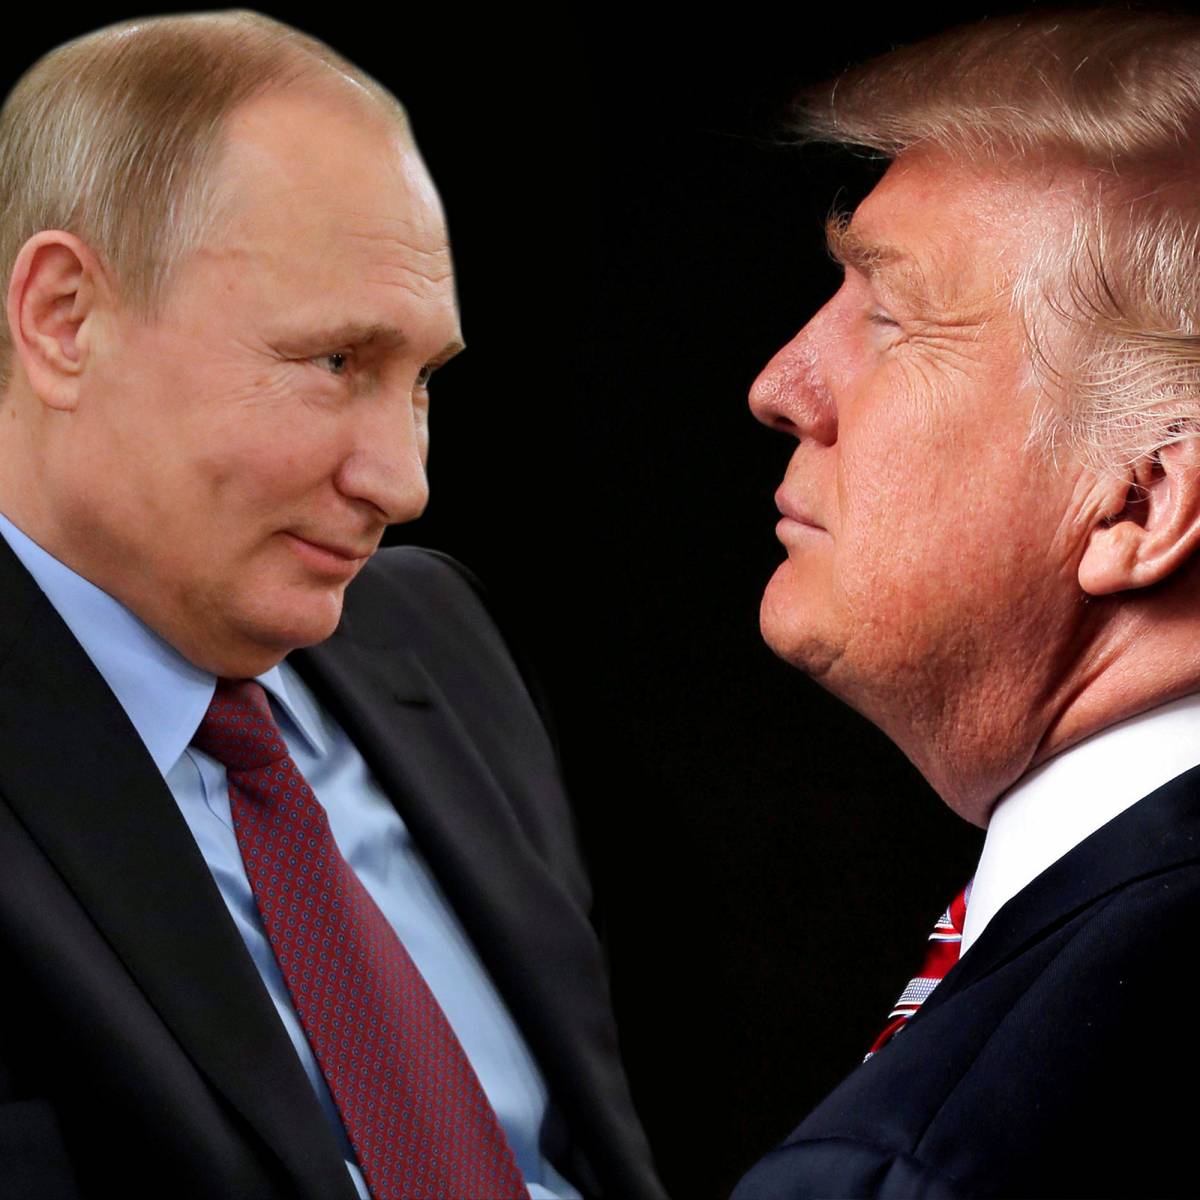 Independent о встрече Путина и Трампа: принципиальное значение для оттепели